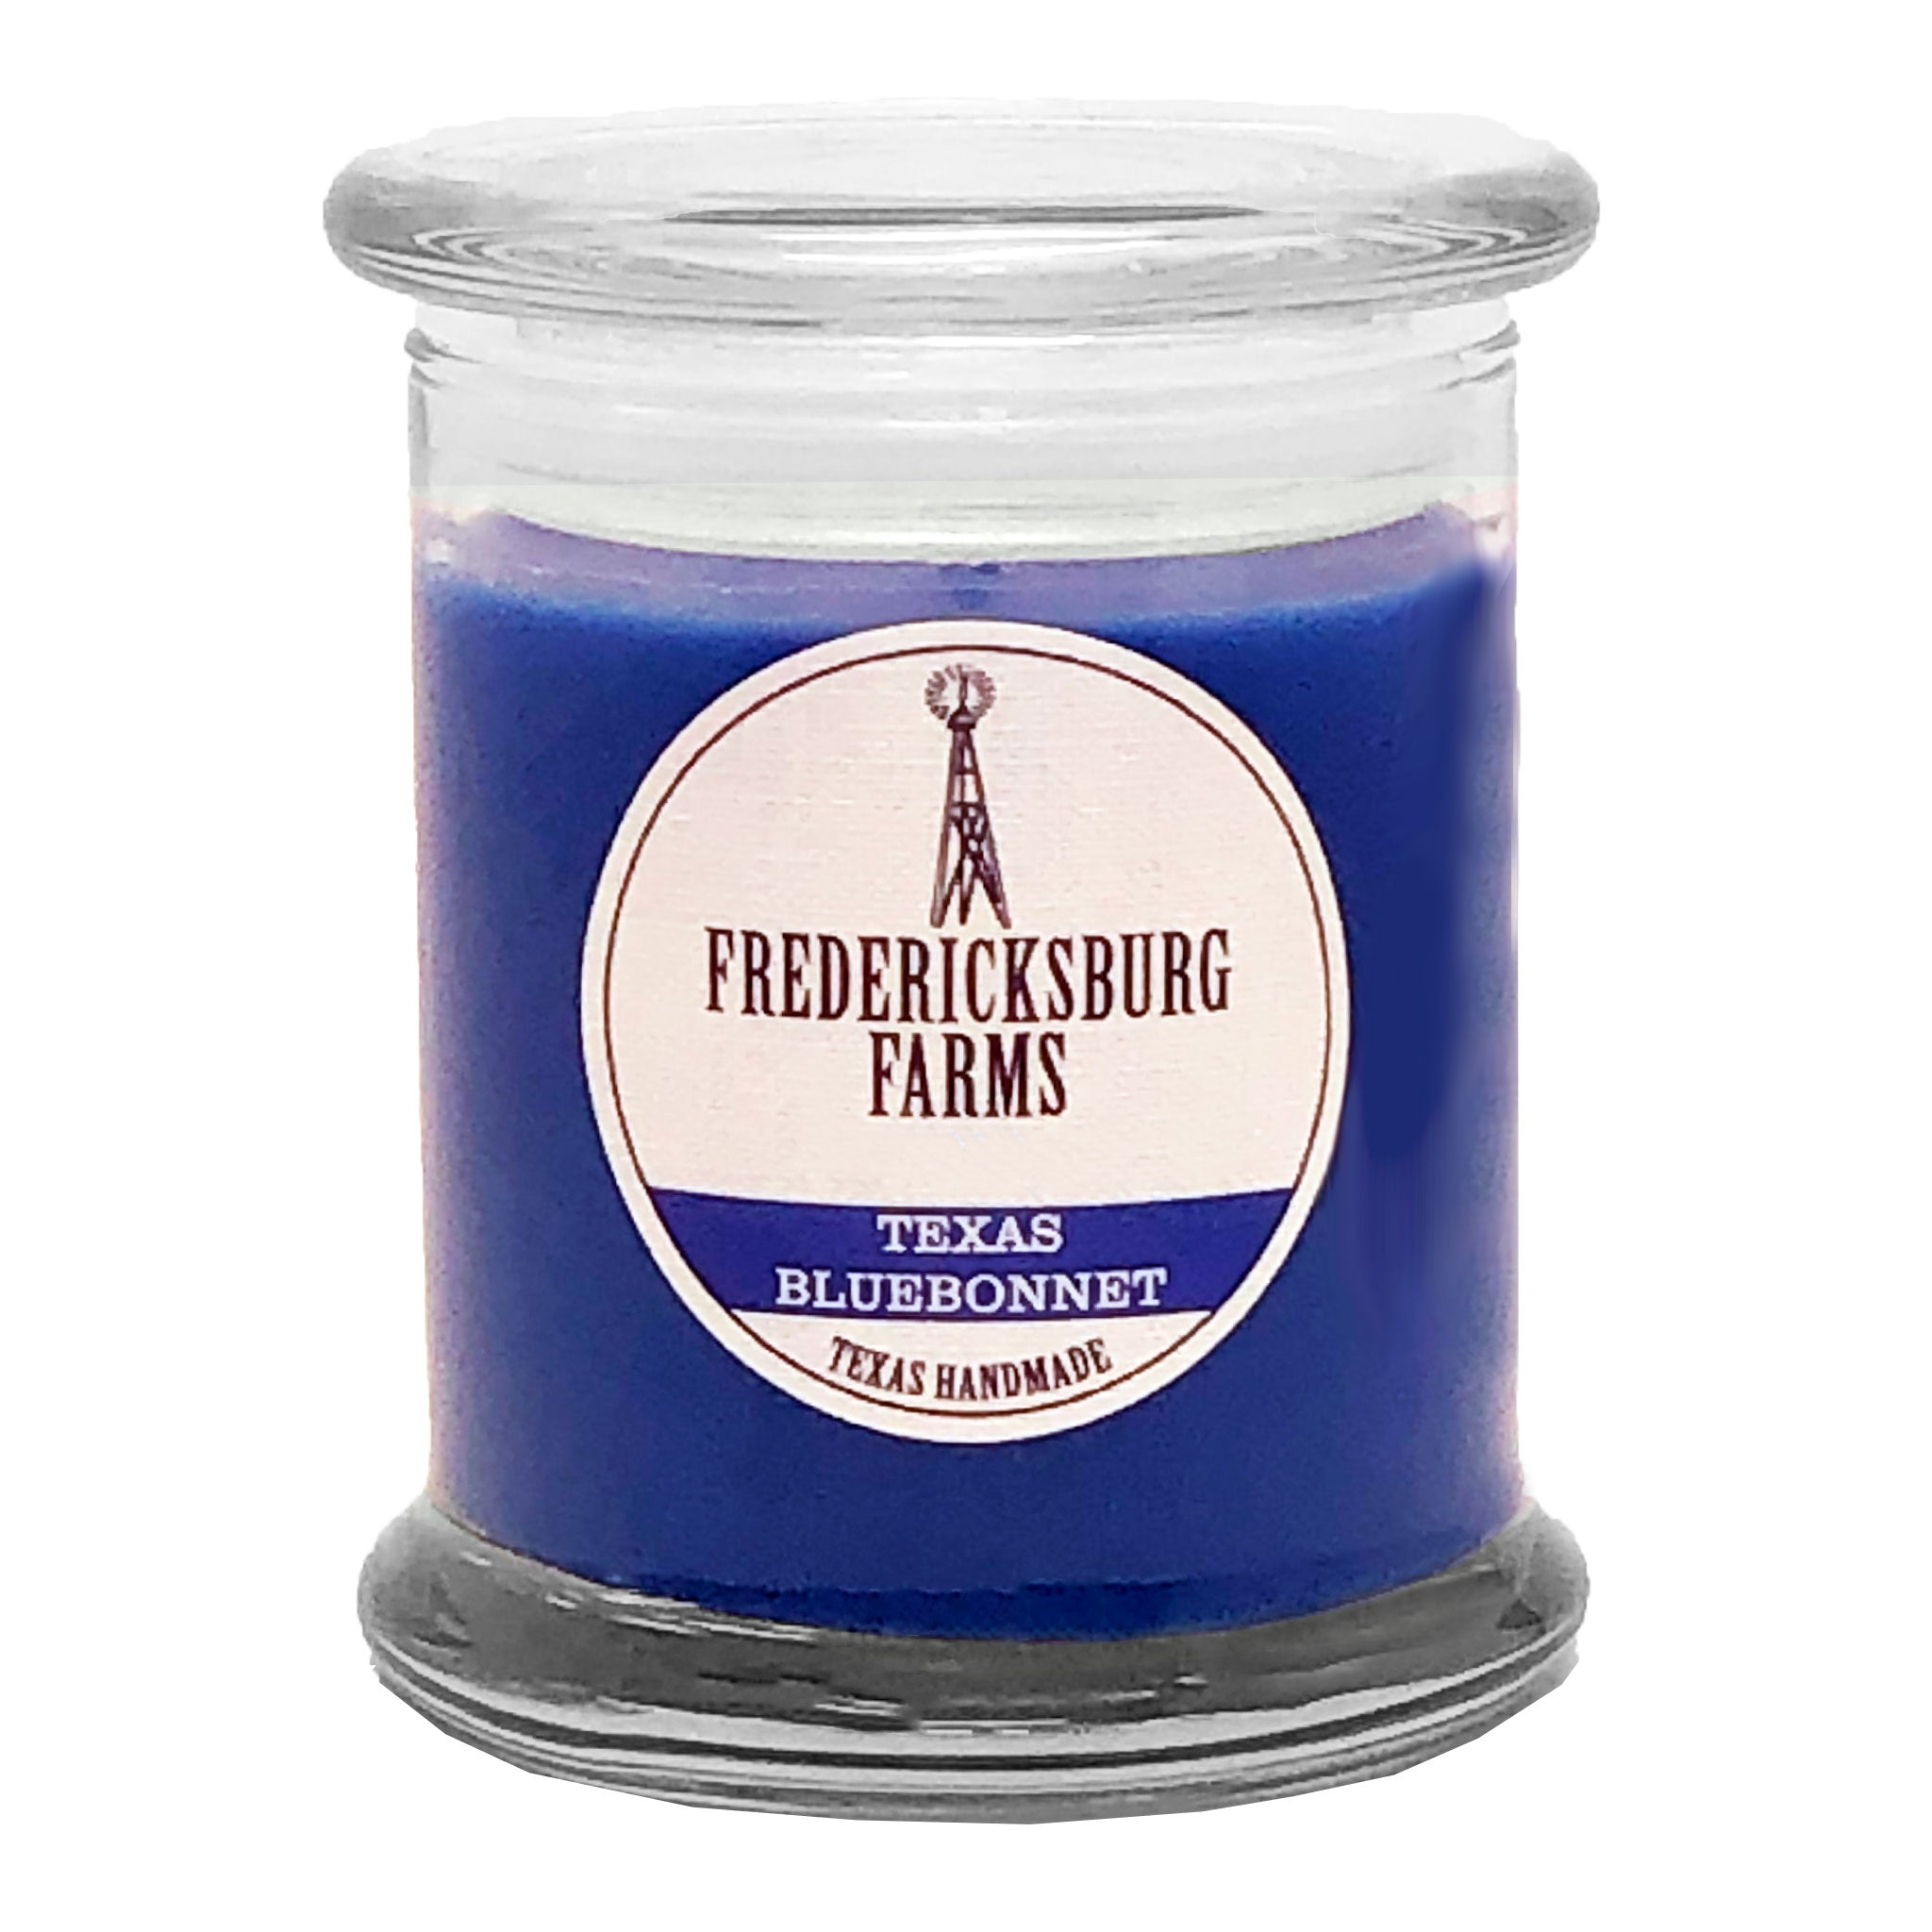 Texas Bluebonnet Candle (9 oz.) - Fredericksburg Farms